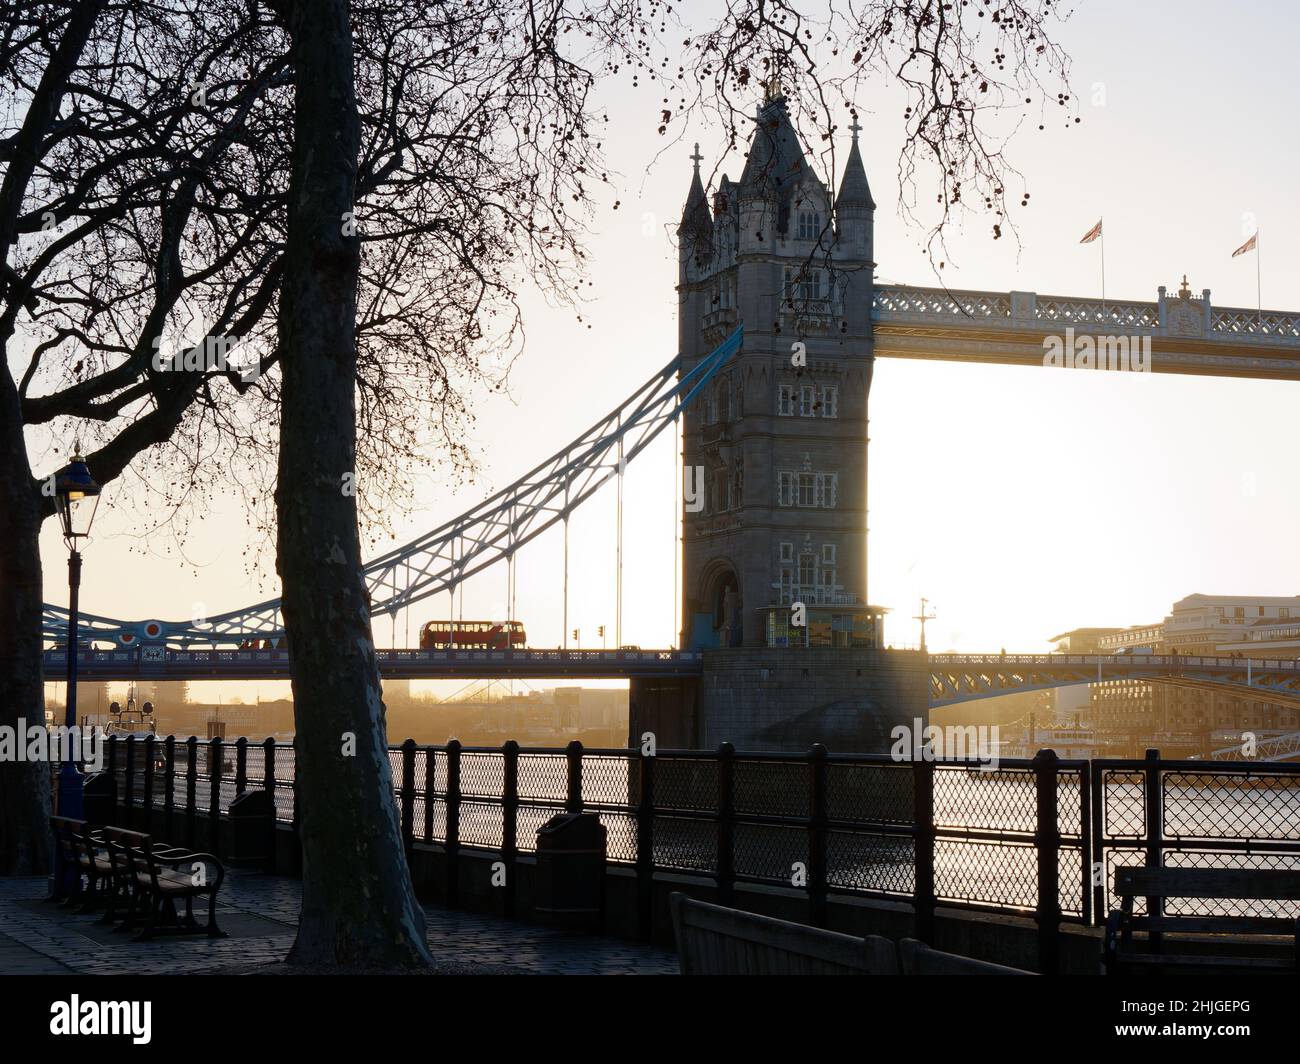 Londres, Grand Londres, Angleterre, janvier 5th 2022 : le bus traverse le Tower Bridge pendant un lever de soleil hivernent, vu depuis la rive nord de la Tamise. Banque D'Images